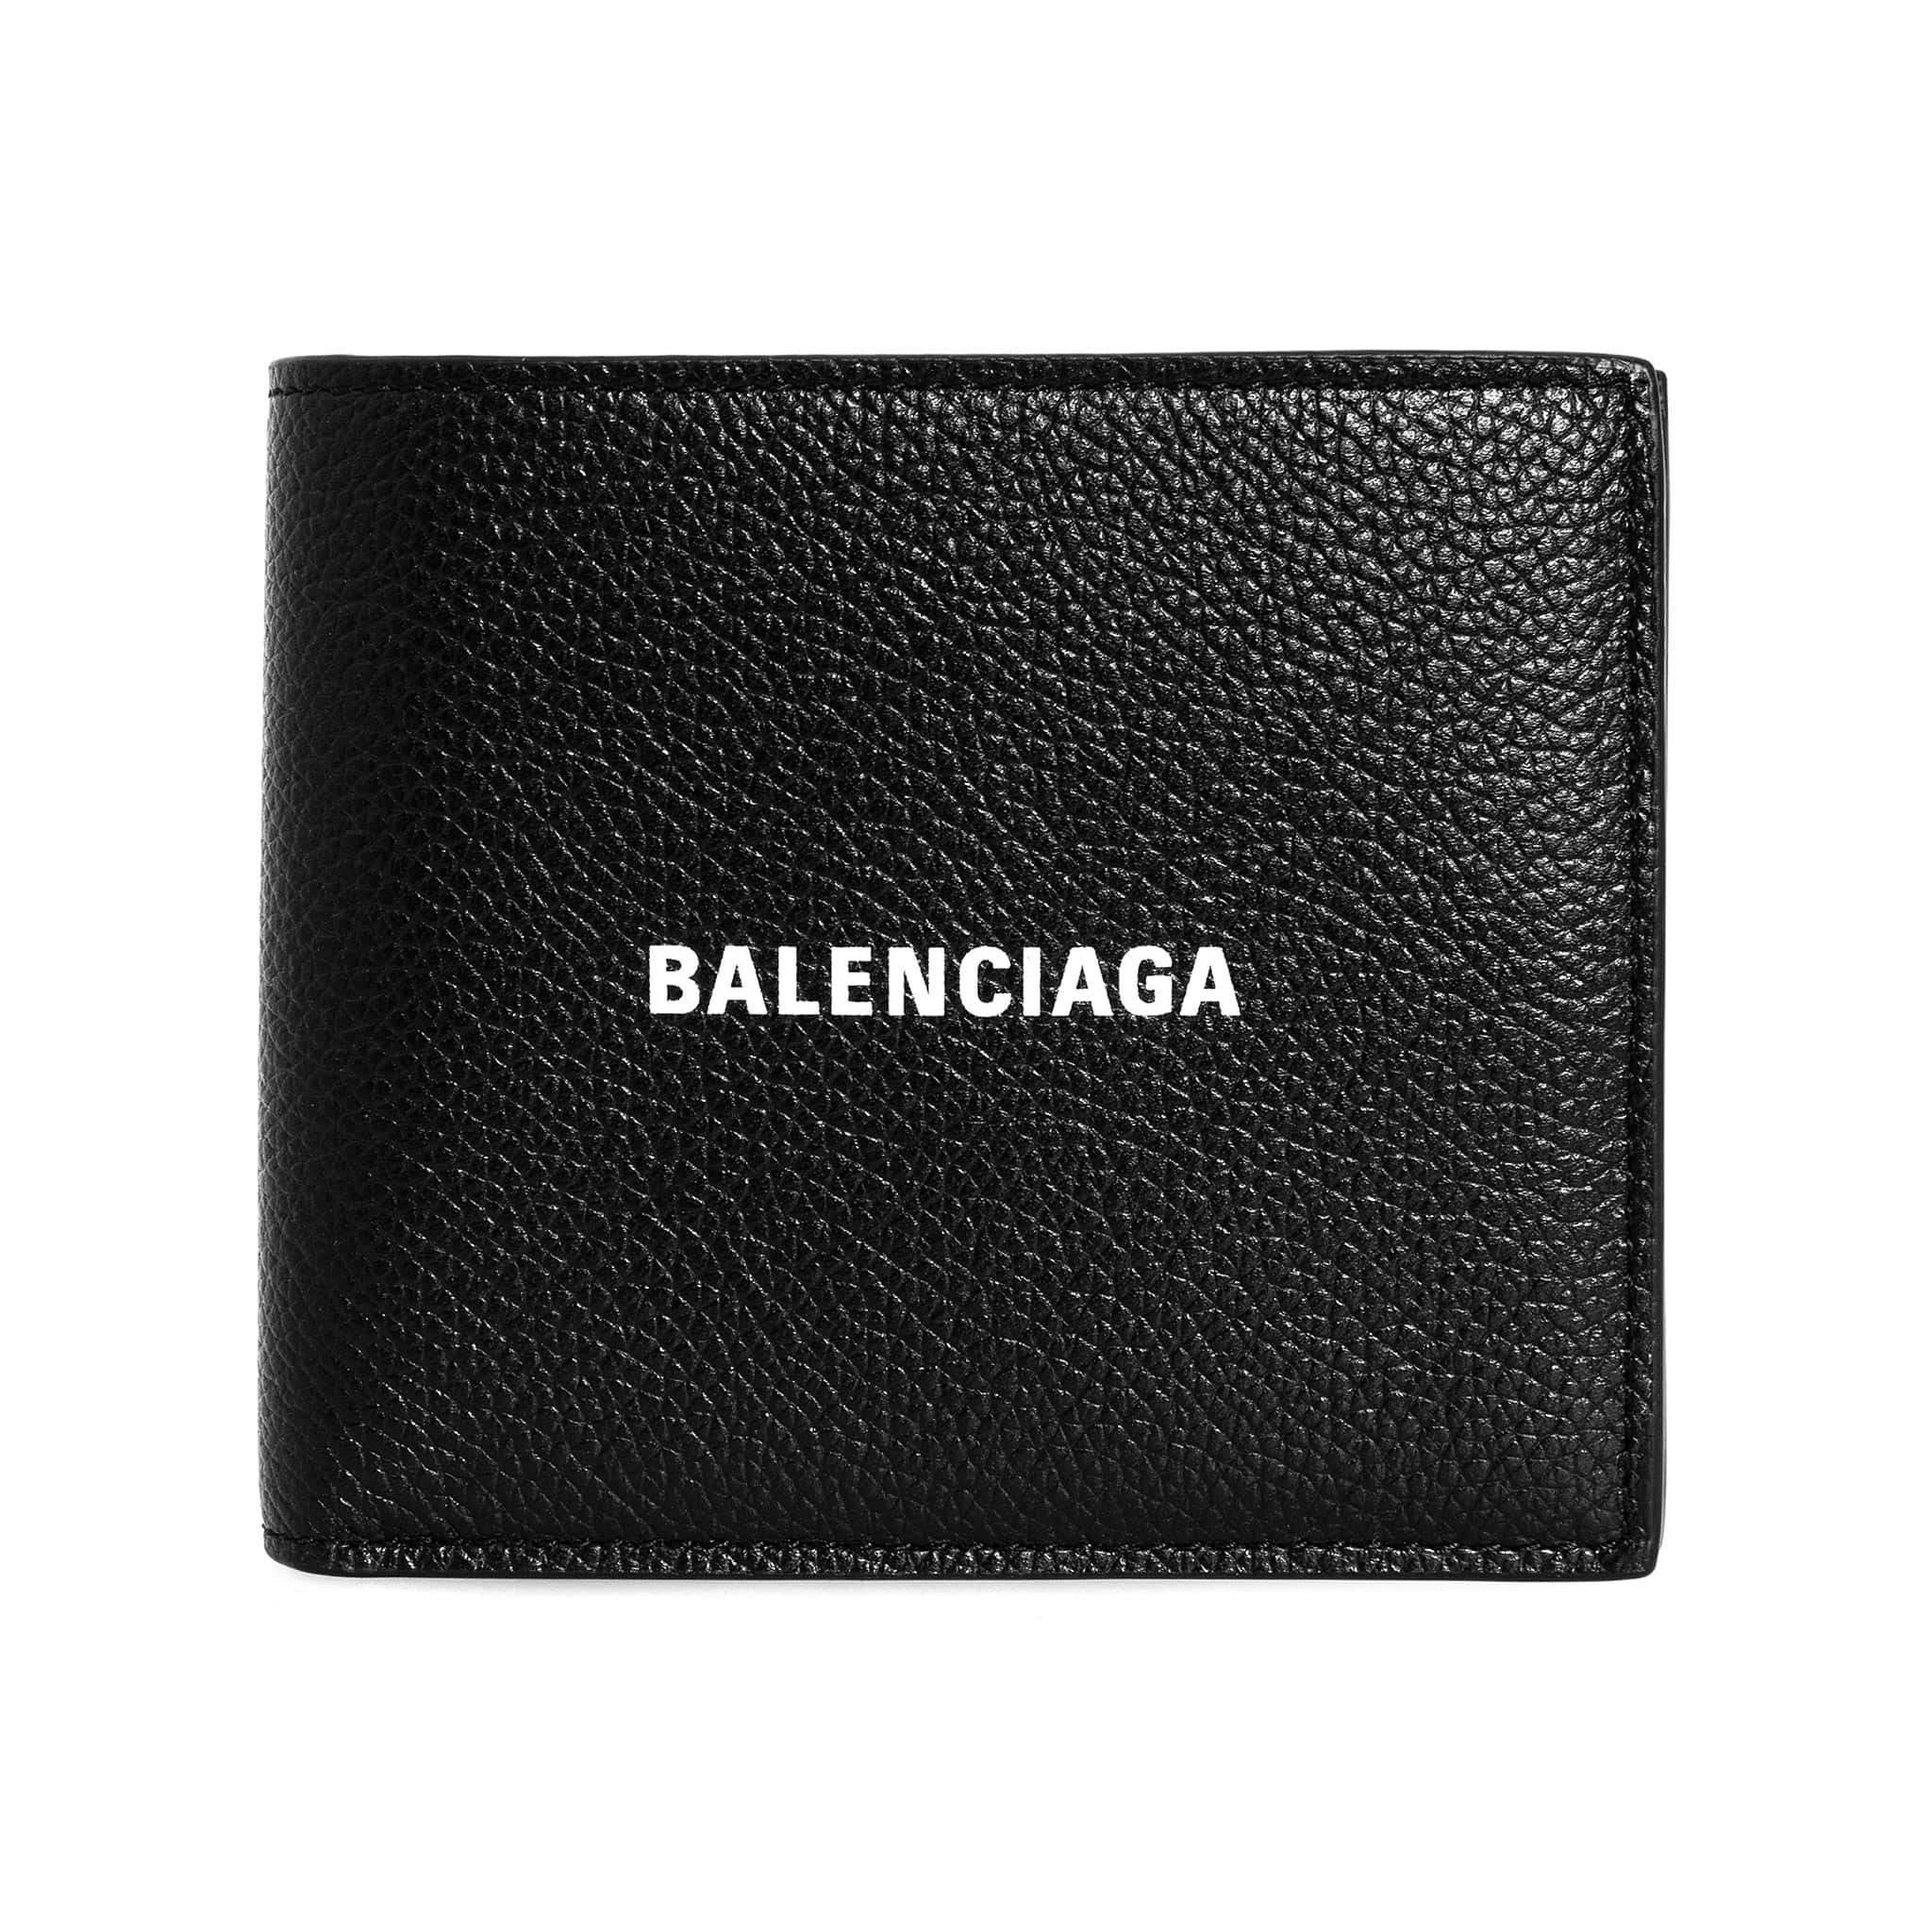 バレンシアガ バレンシアガ BALENCIAGA 財布 メンズ 二つ折り財布 CASH SQUARE FOLD WALLET [キャッシュ] 594549 1IZI3